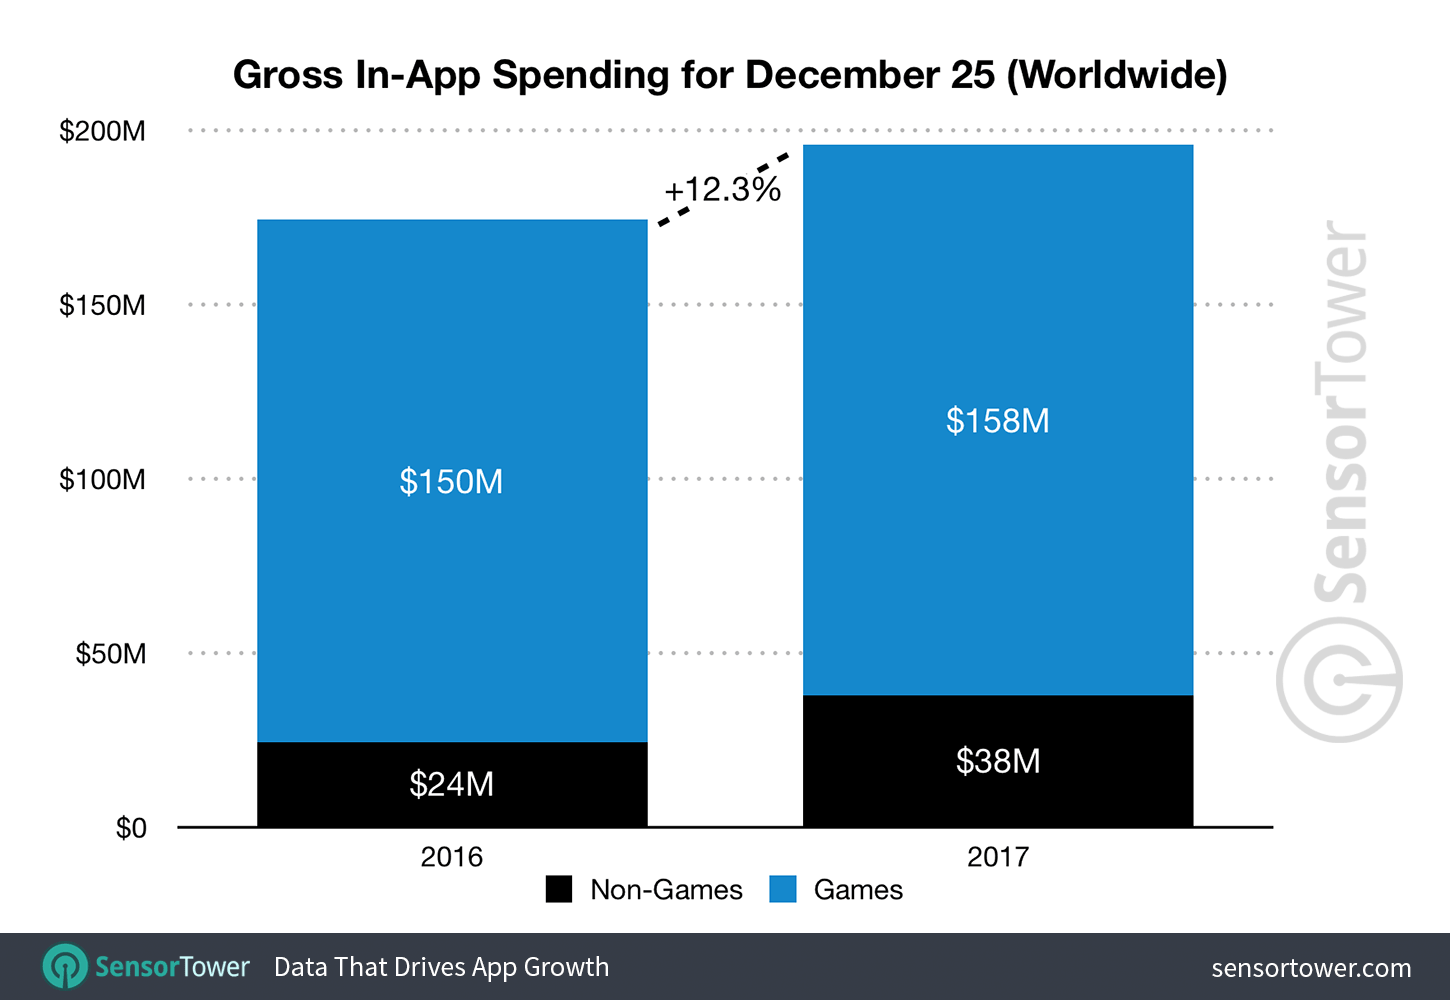 Gráfico da Sensor Tower com gastos de apps no Natal de 2017